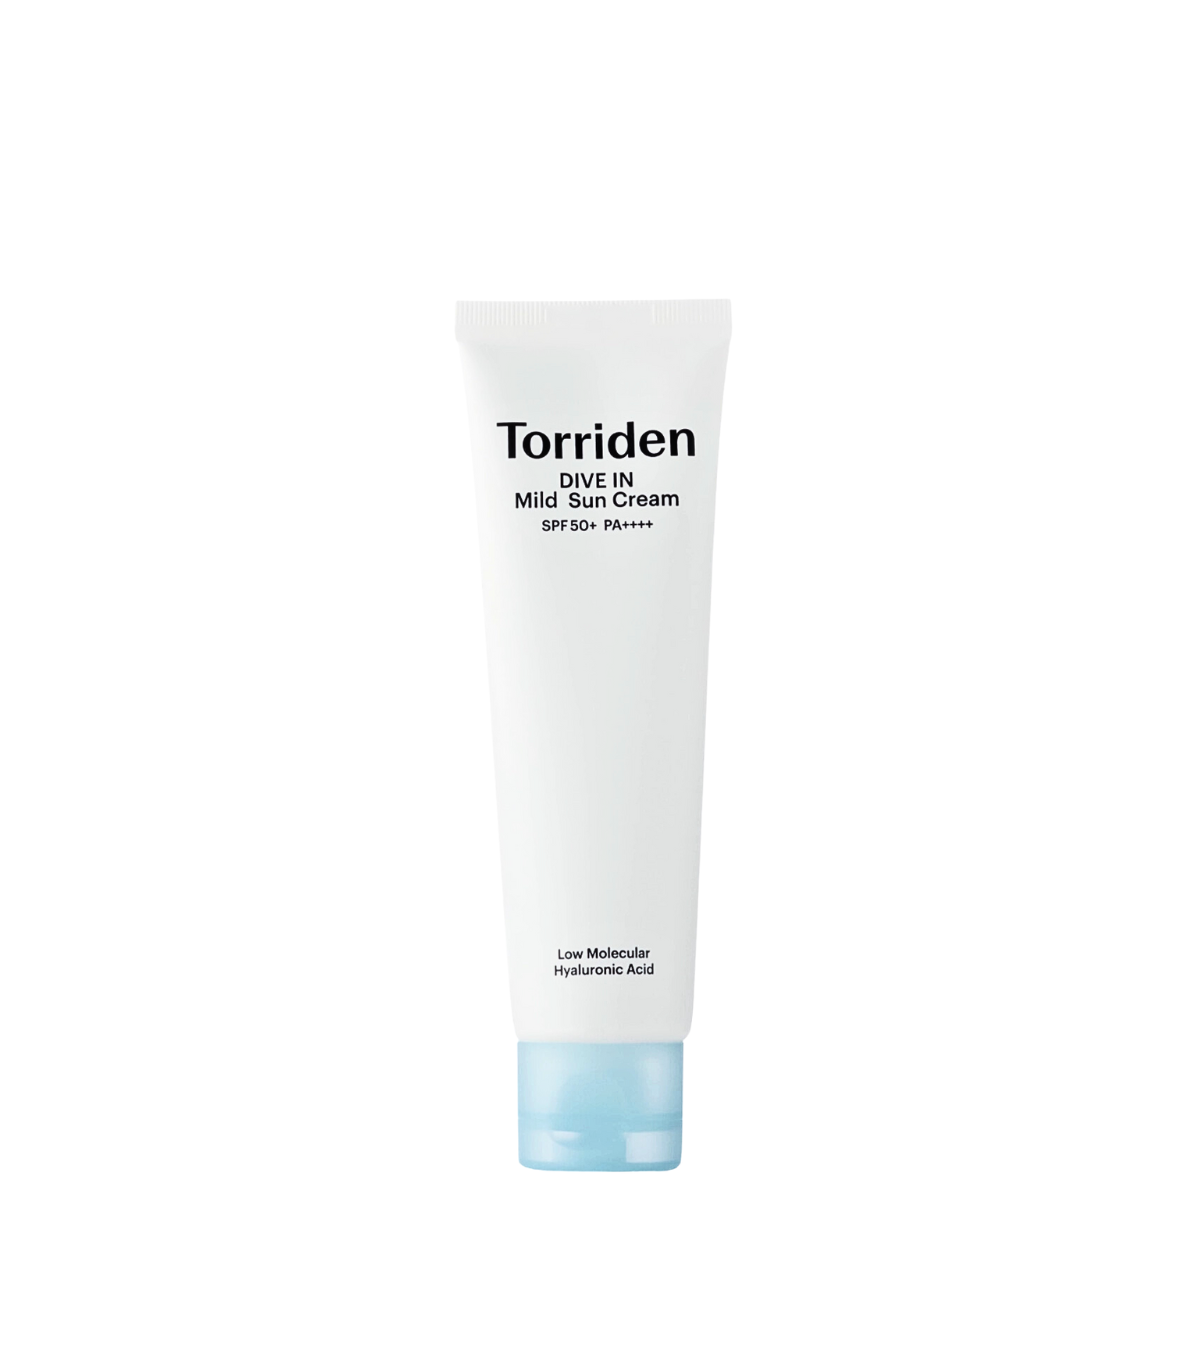 Torriden - DIVE-IN Mild Suncream SPF50+ PA++++, Torriden | Meka.sk